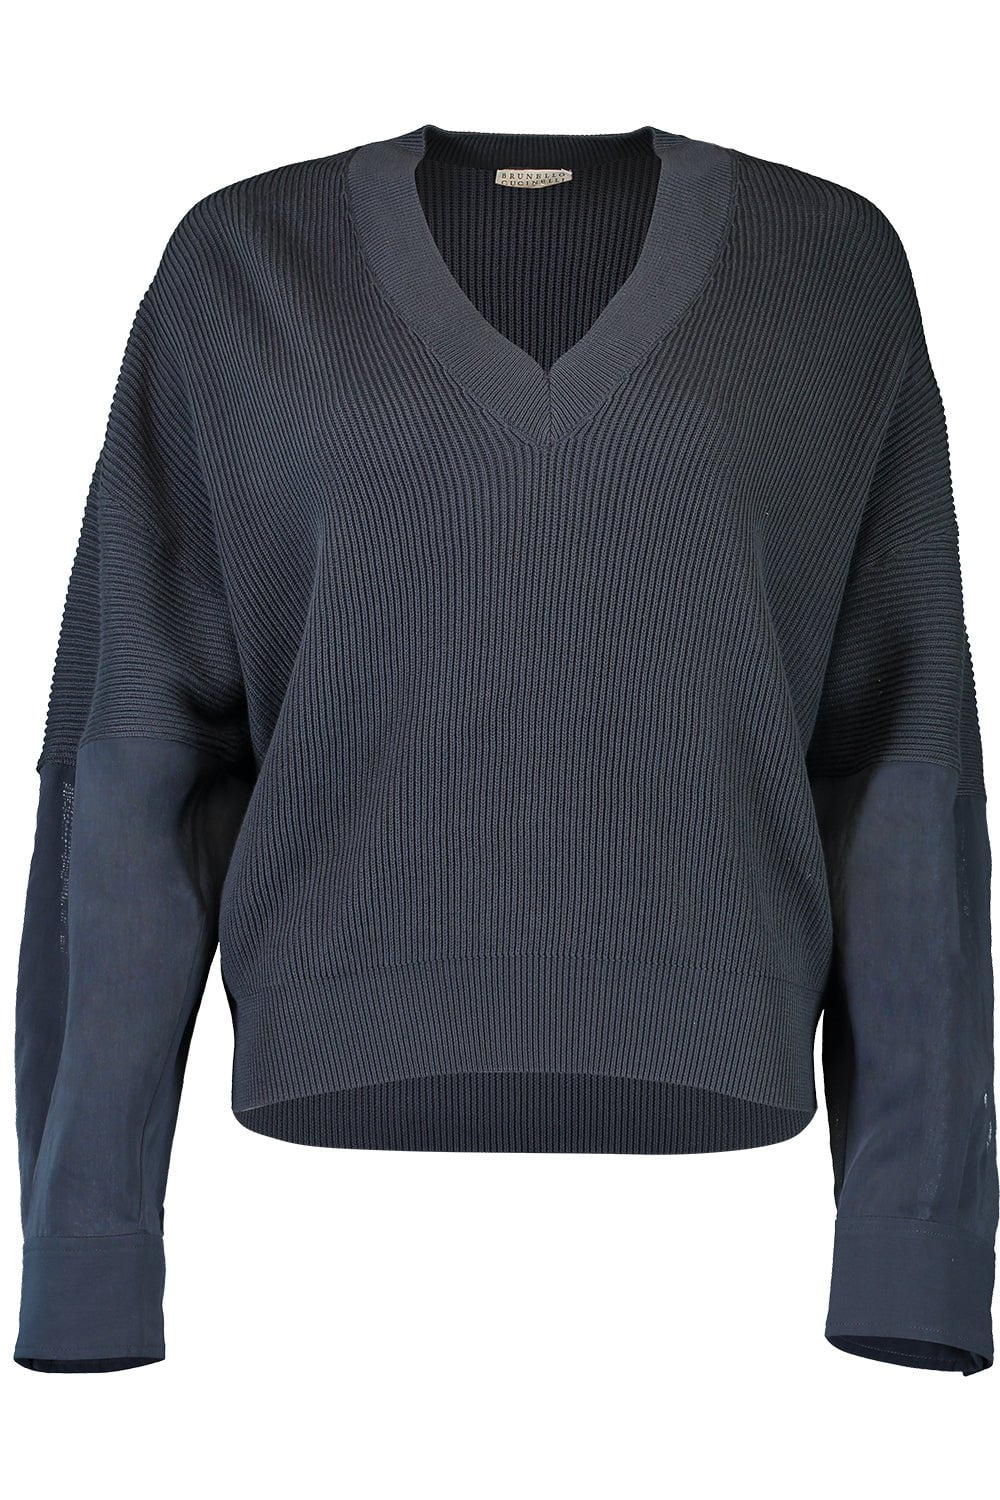 BRUNELLO CUCINELLI-Mixed Media Pullover Sweater-